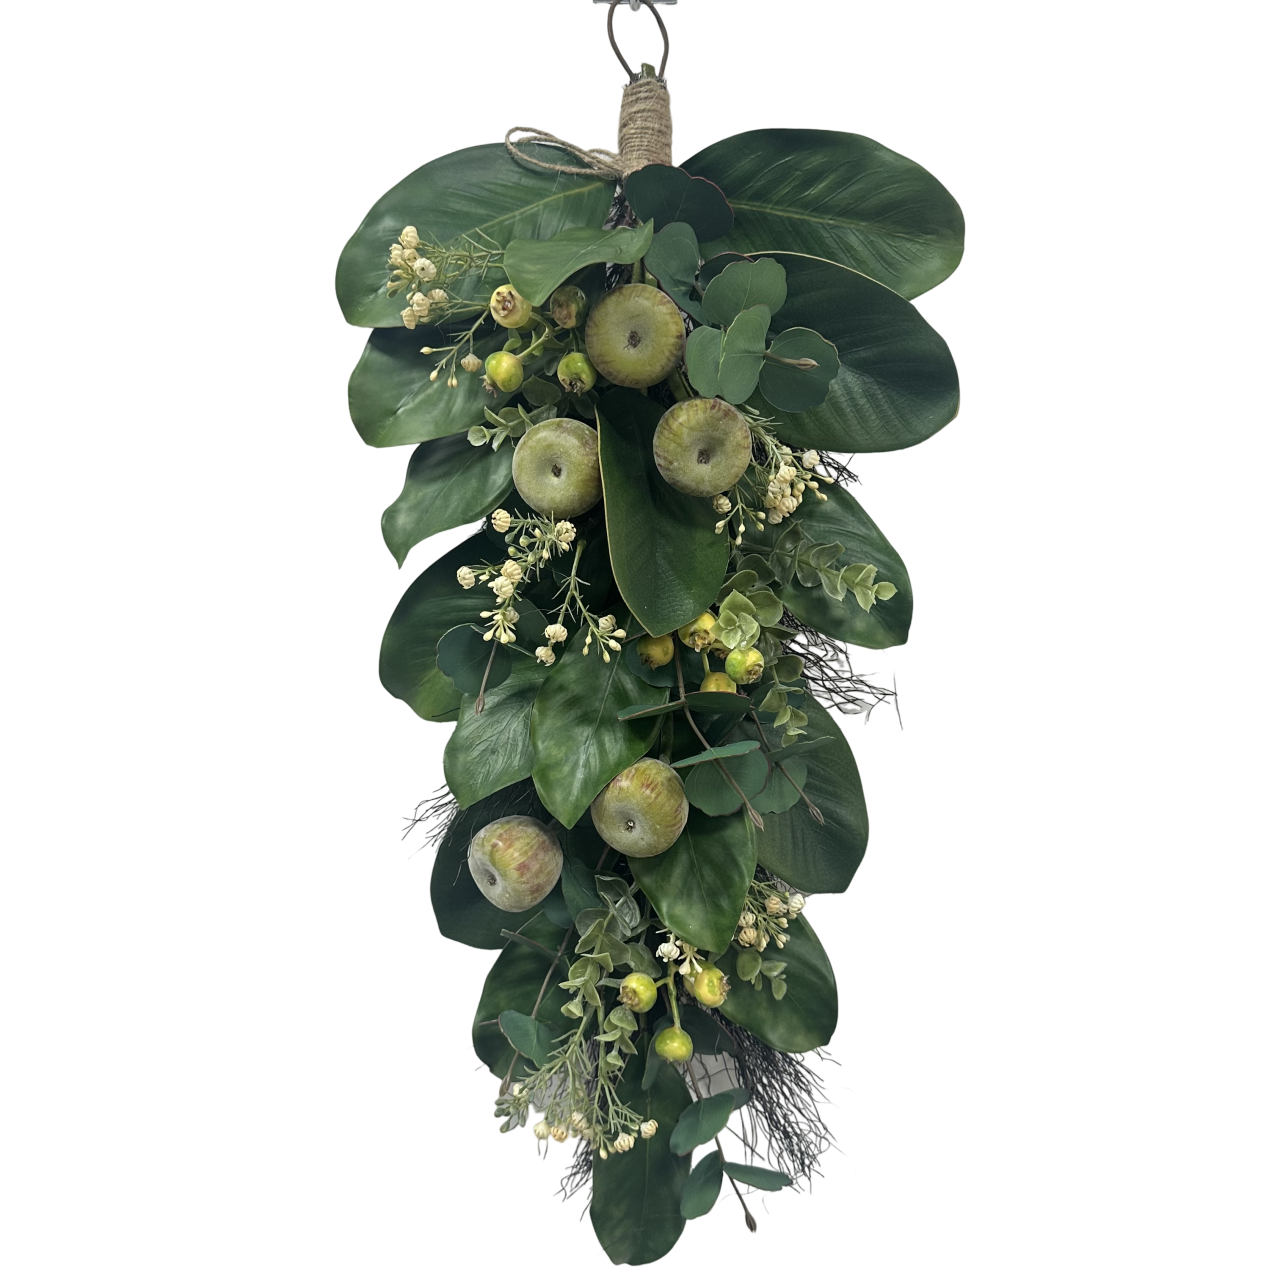 Senmasine kunstmatige krans gemengde appelvijg groene bladeren lentekransen voordeur hangende decoratie